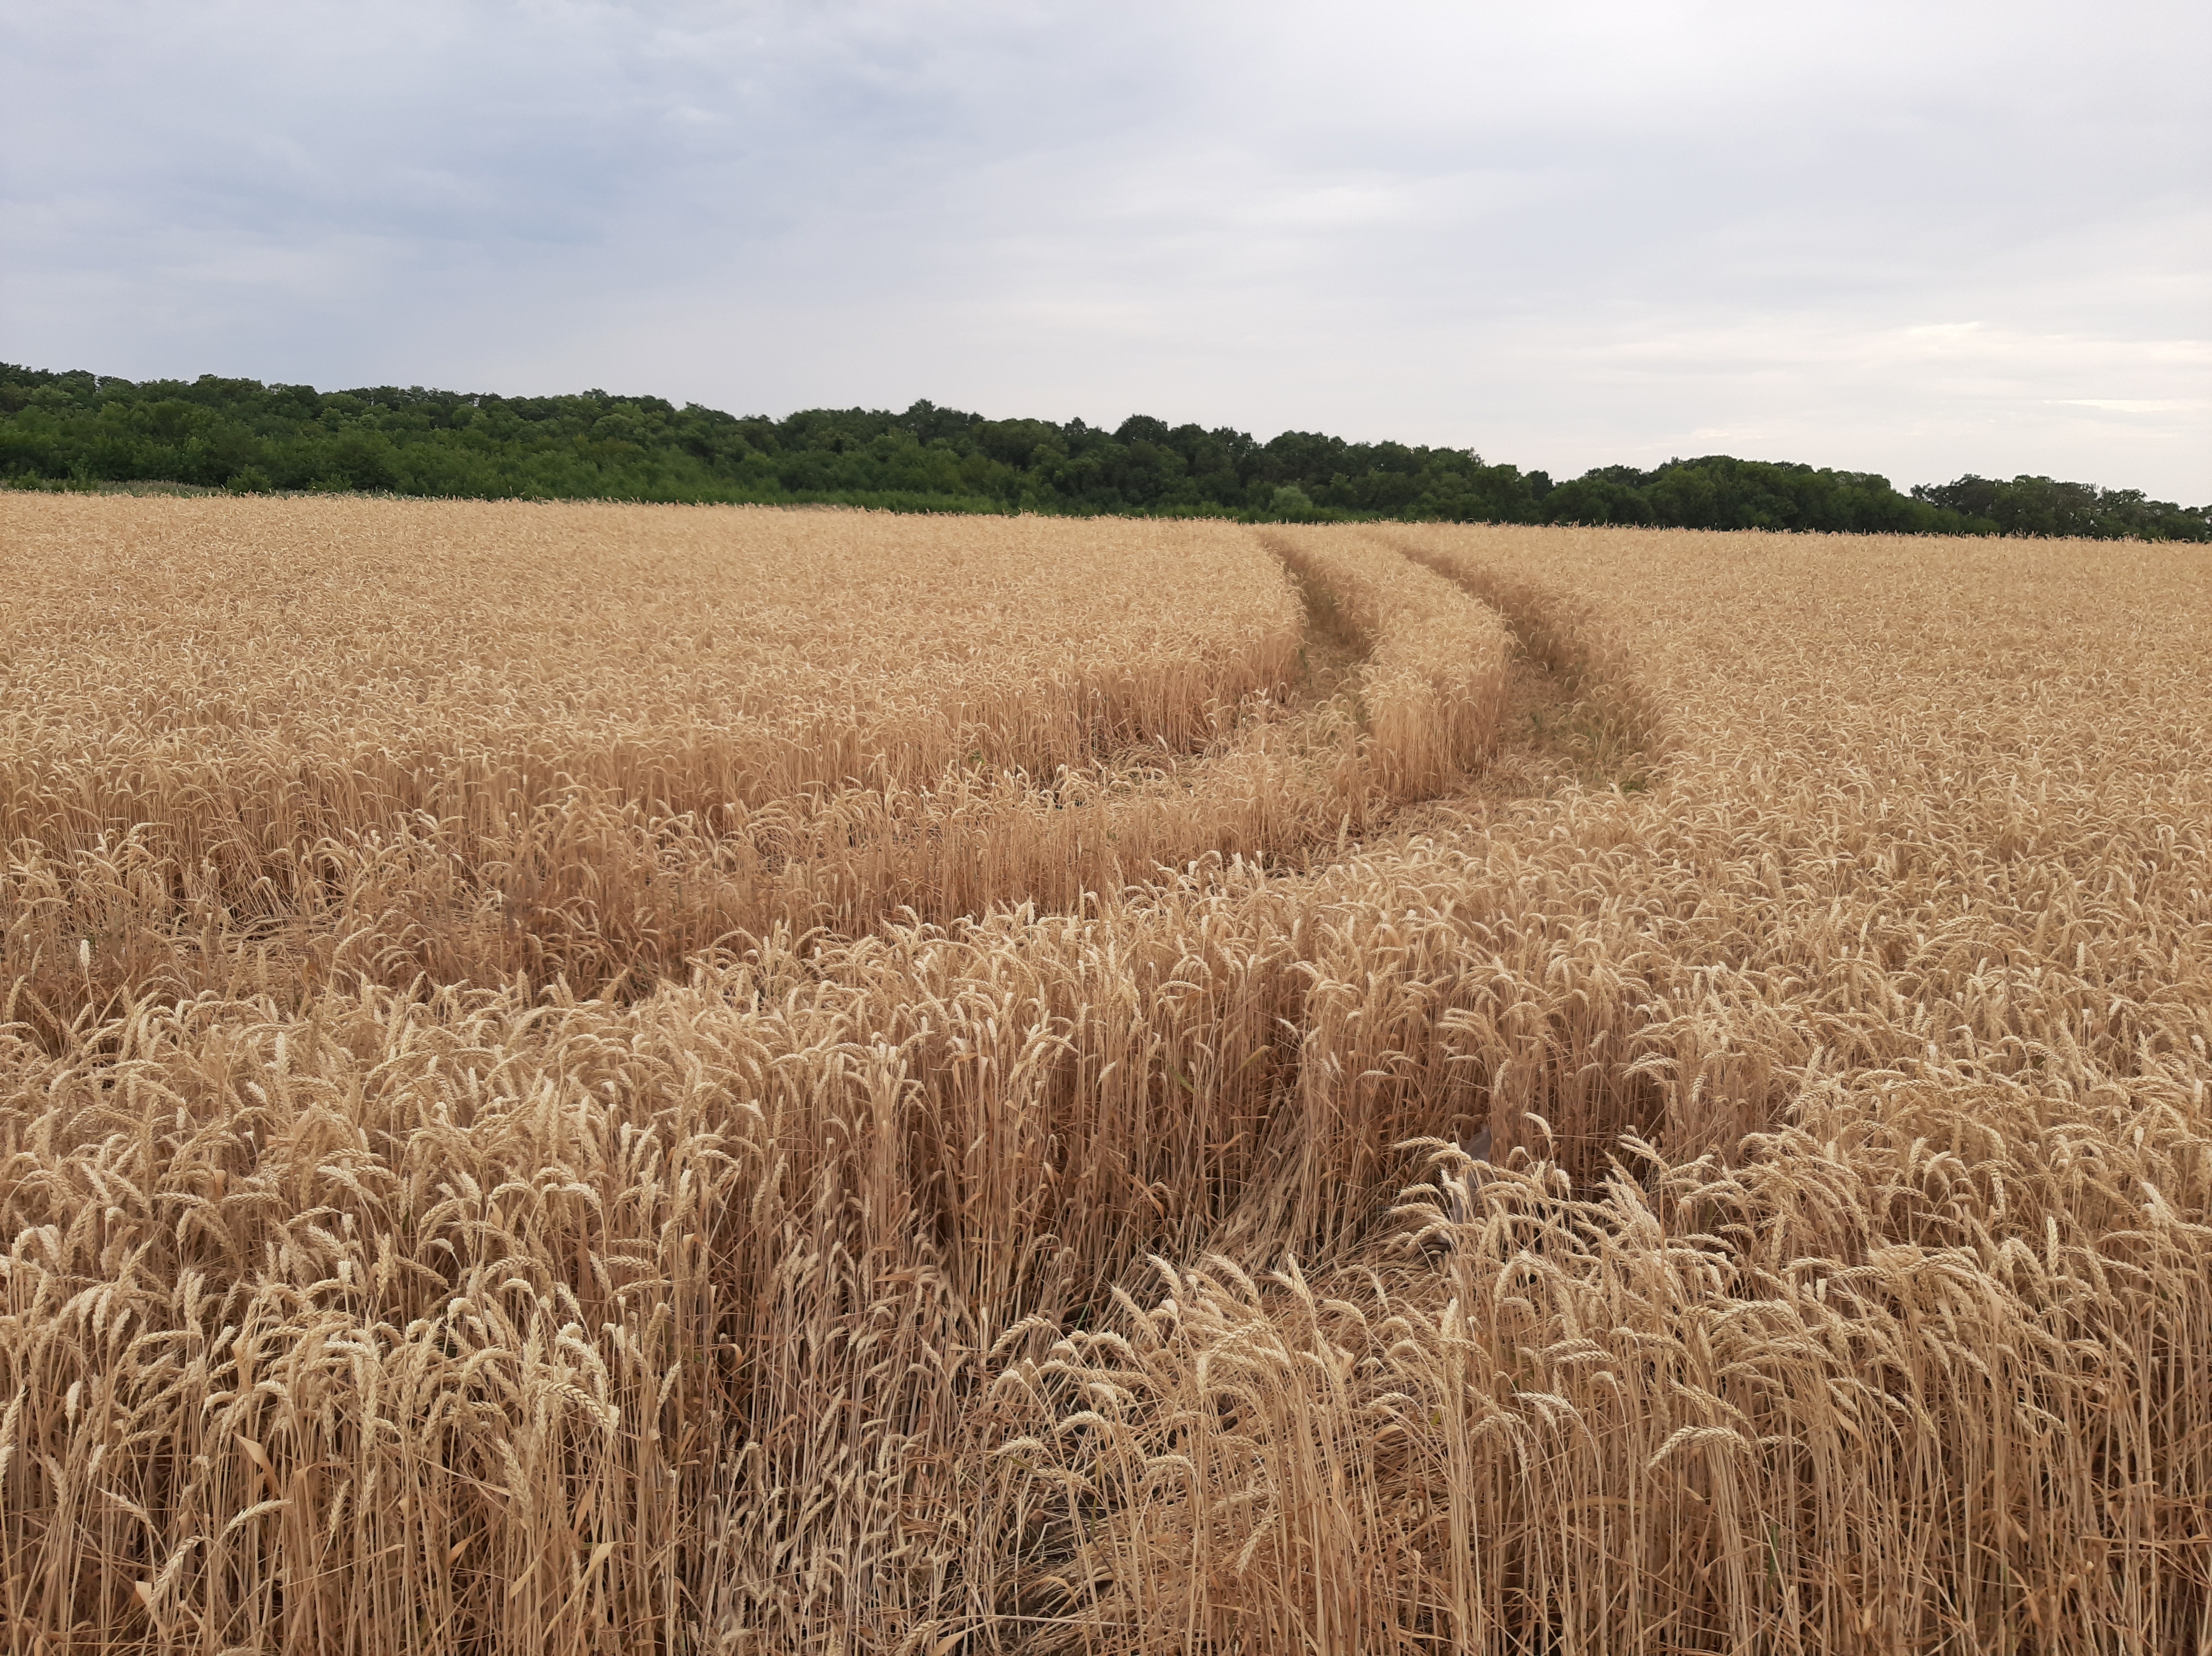 Car footprints in a wheat field